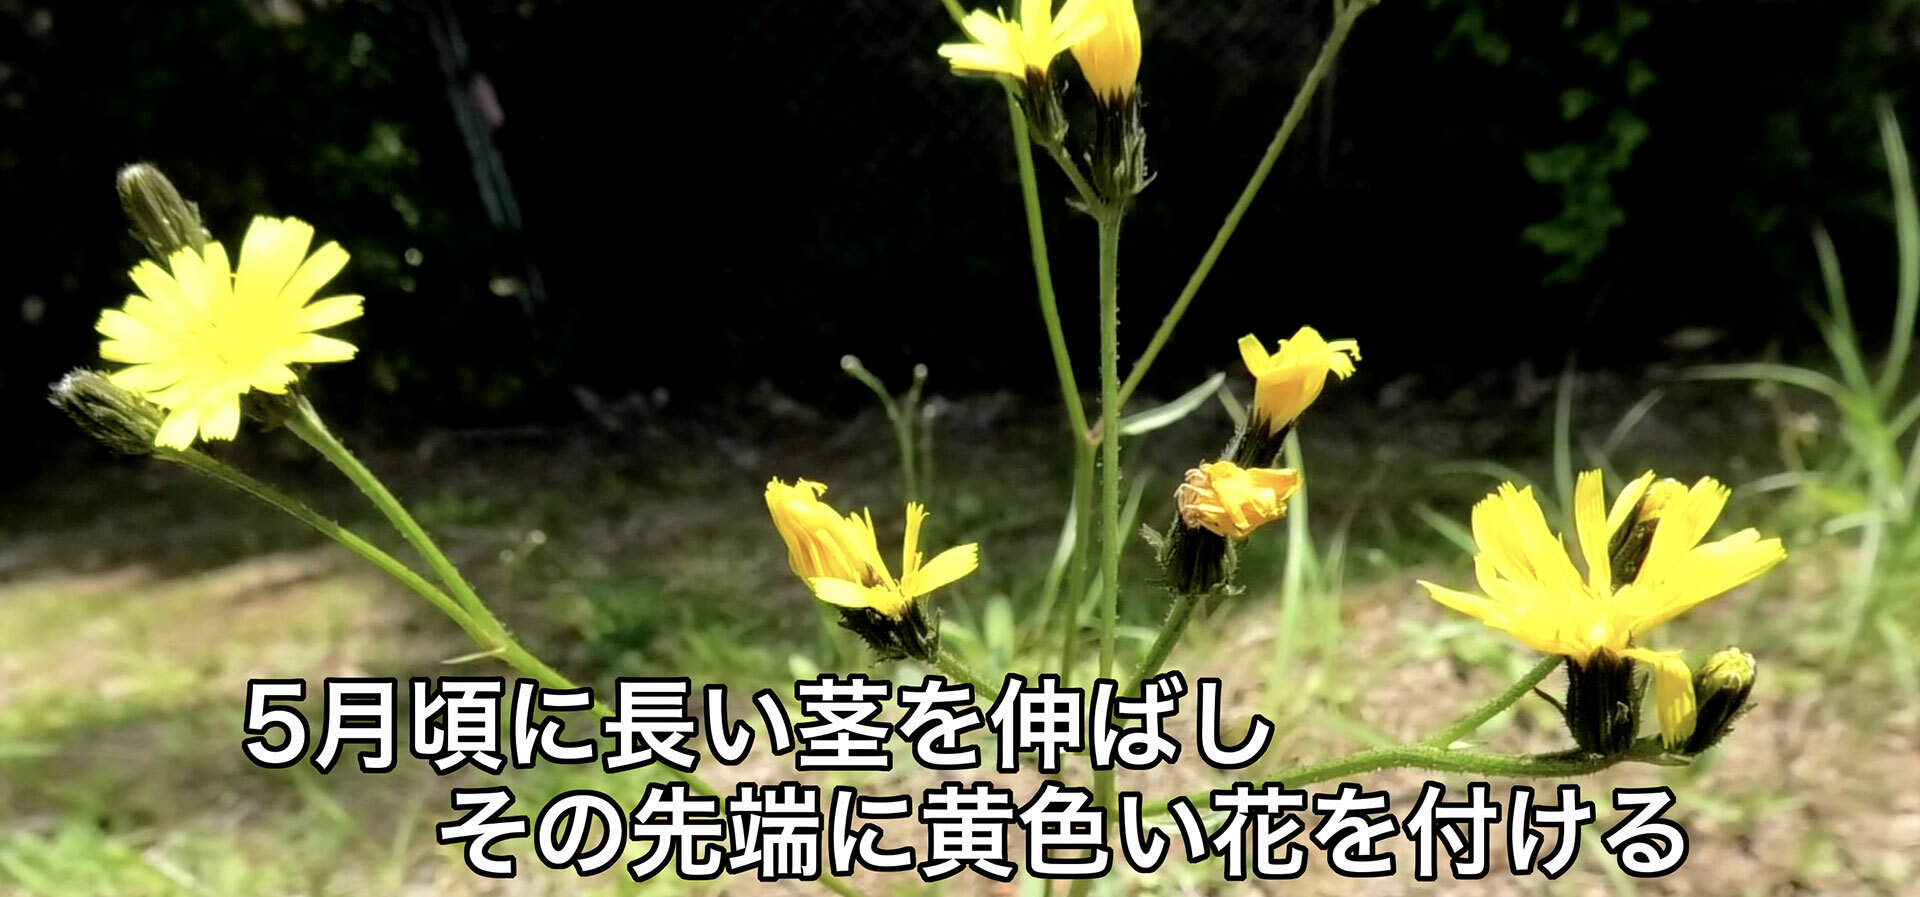 長く伸ばした茎の先端にタンポポに似た黄色い花を付ける